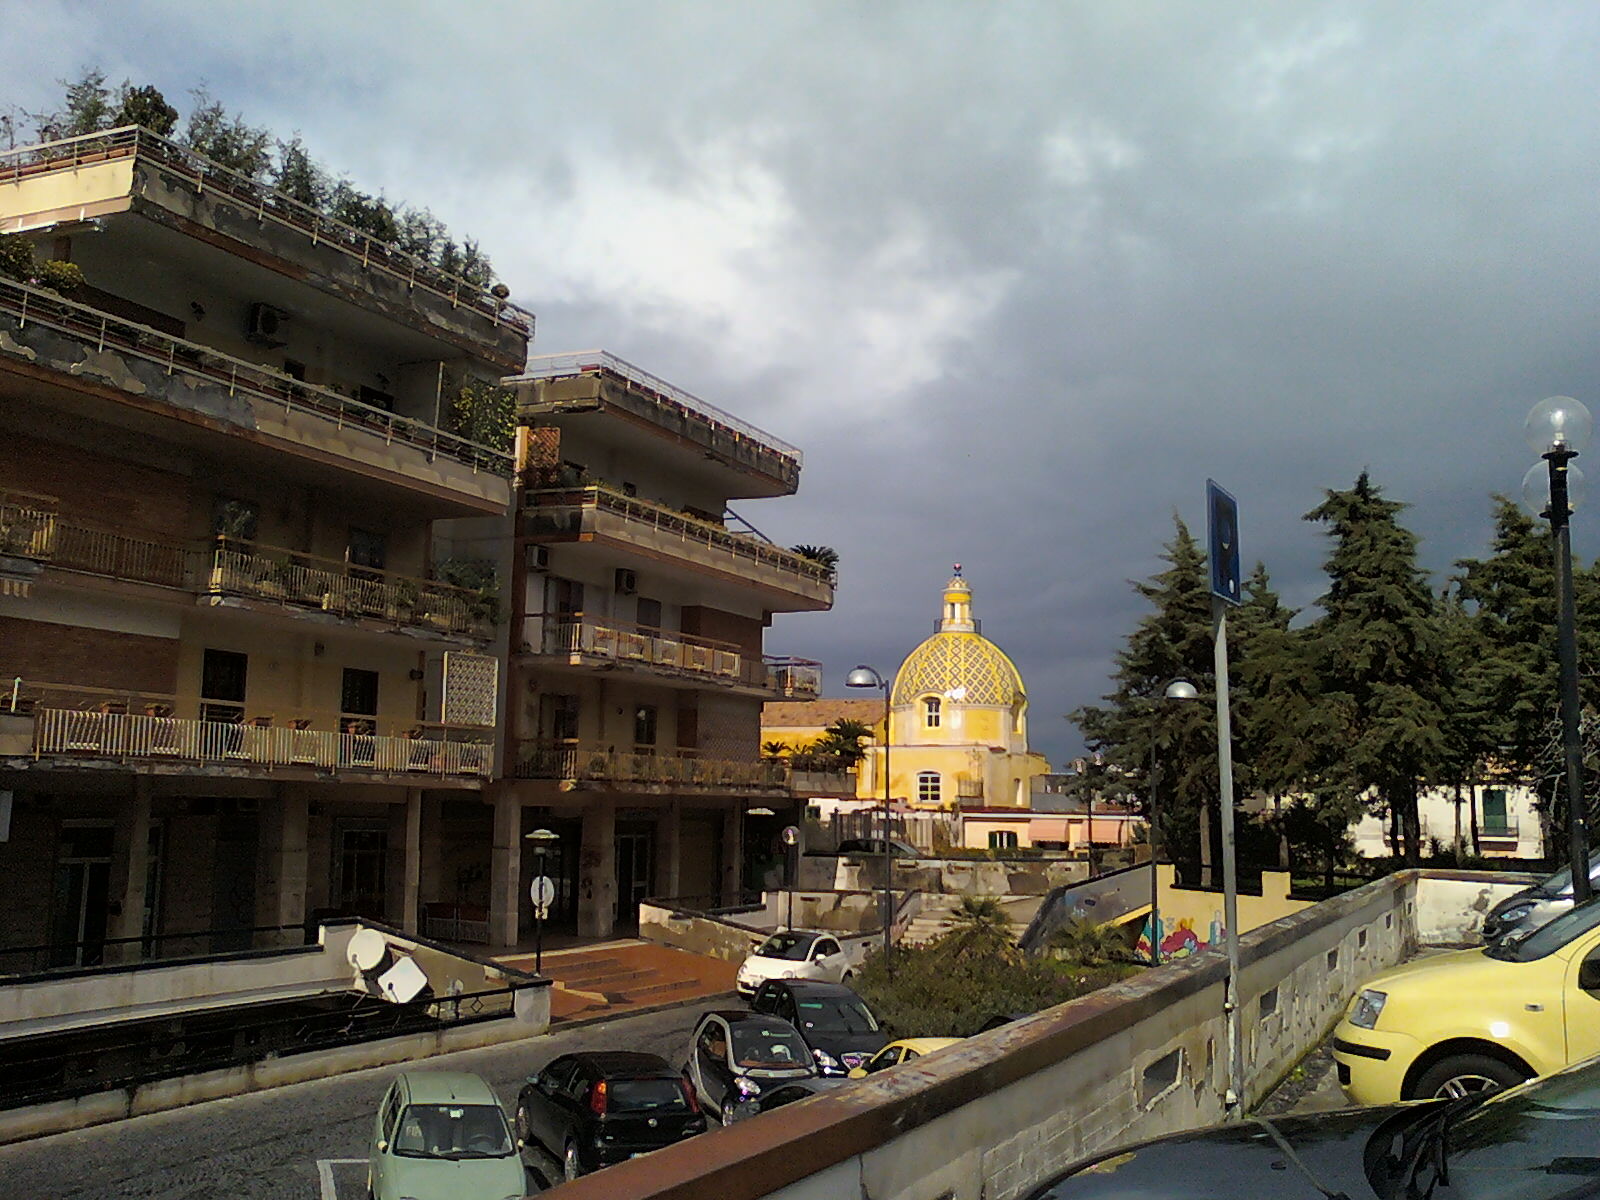  San Sebastiano al Vesuvio, nominato il Commissario prefettizio del Comune